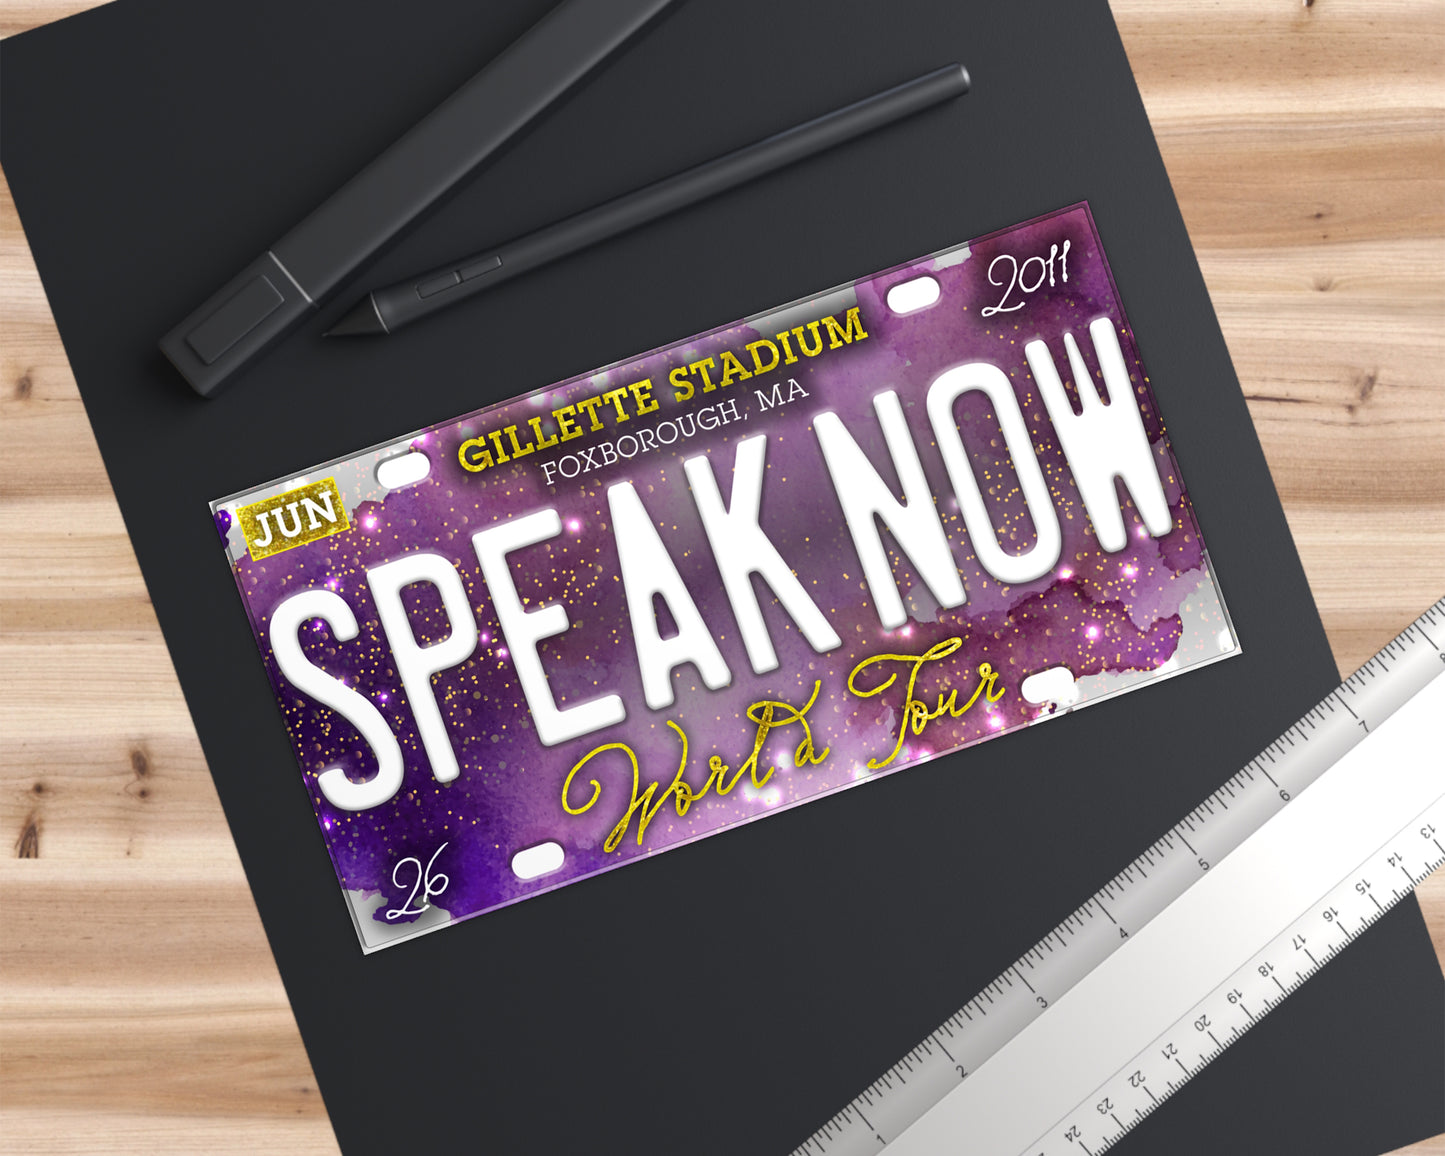 Speak Now World Tour bumper sticker